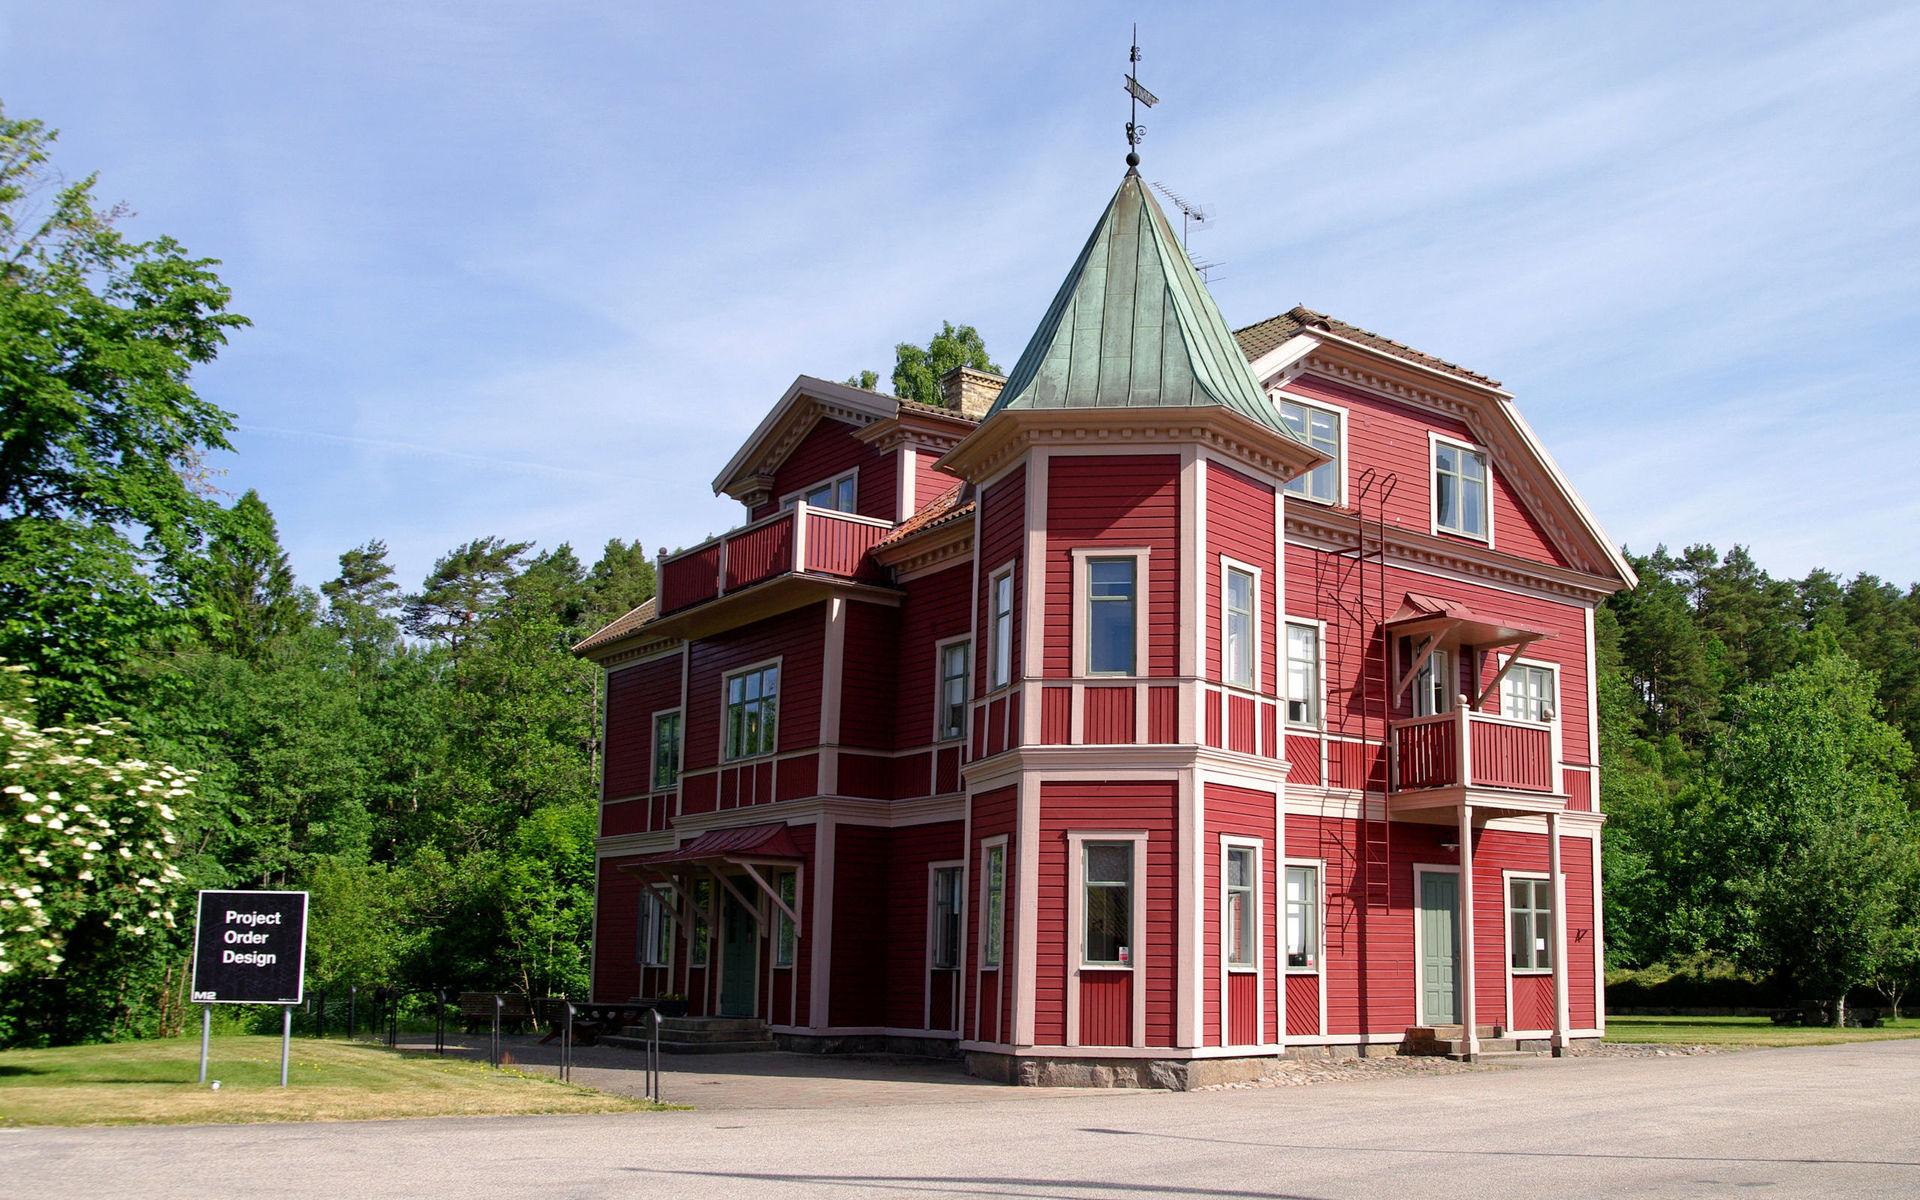 Utgångspriset för M2-tomten i Rydöbruk, fd Konstnärsbyn, har sänkts från 12,5 till 4,9 miljoner kronor.